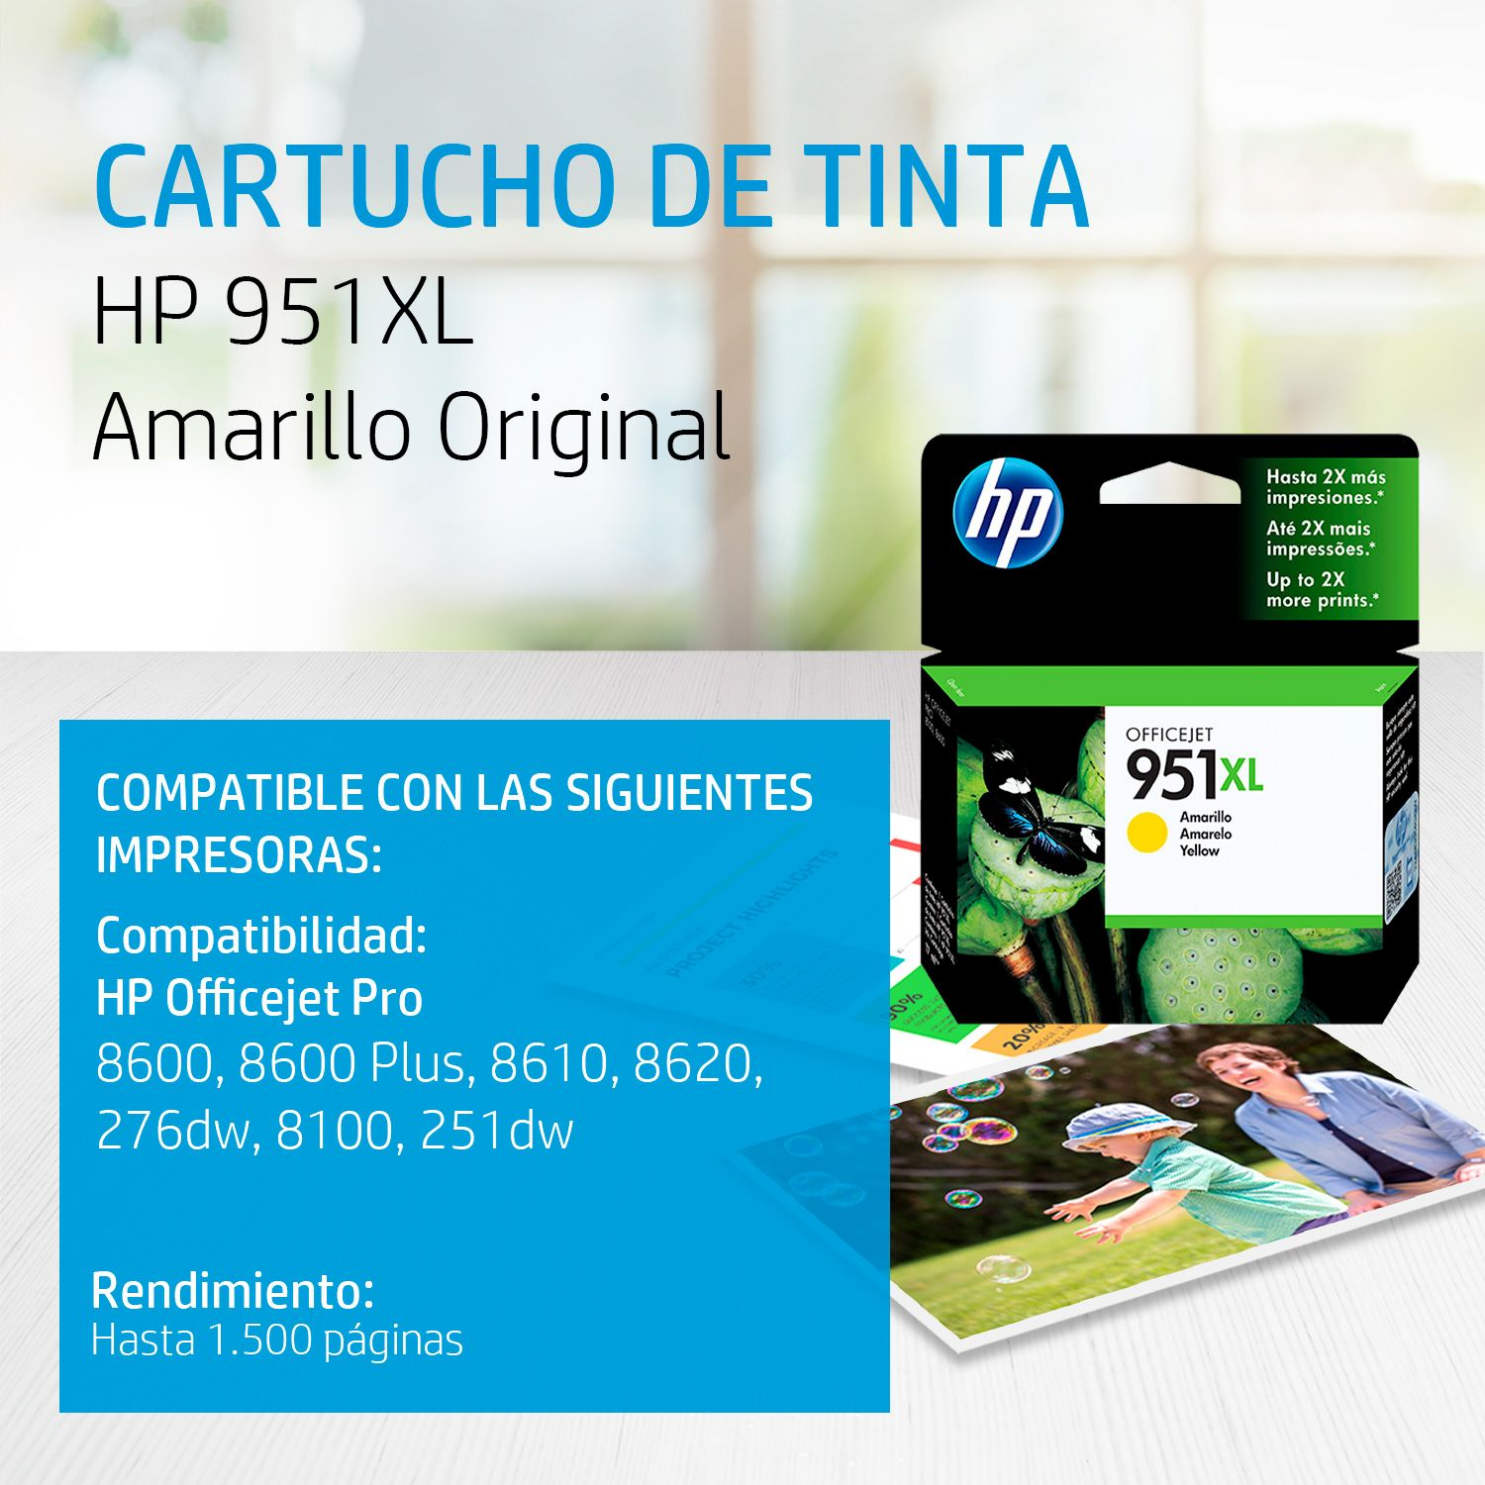 Cartucho de tinta HP 951XL Yellow (CN048AL) OfficeJet 8100, 8600, 1500 Pag.